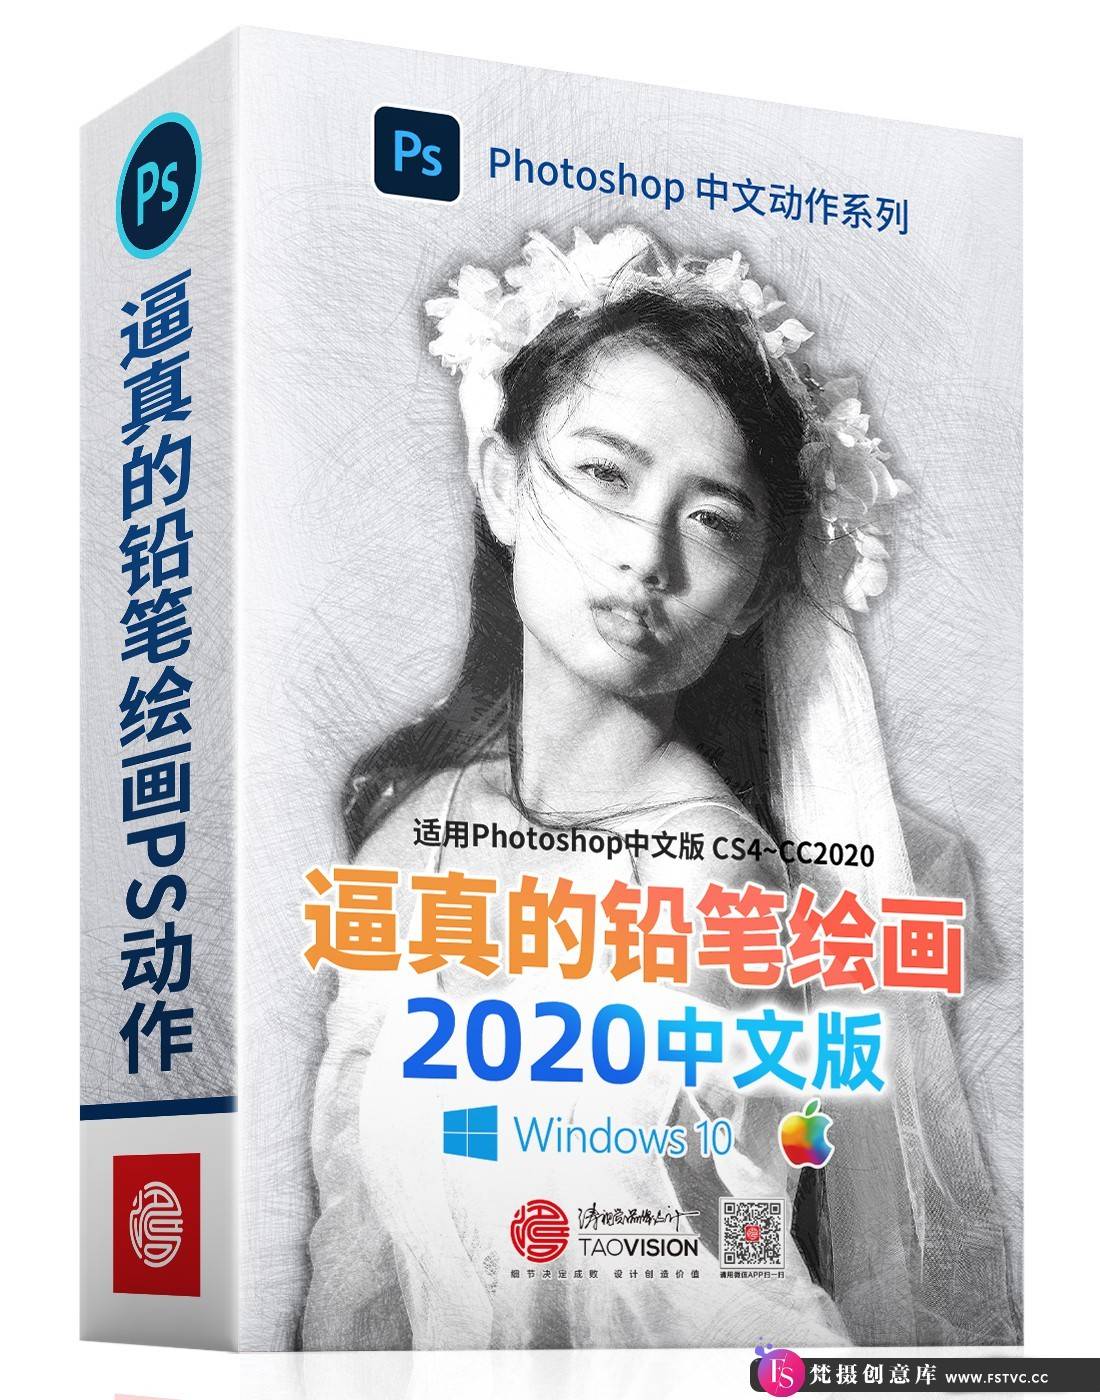 [中文版动作]逼真的铅笔绘画PS动作中文版_完美支持2020-梵摄创意库